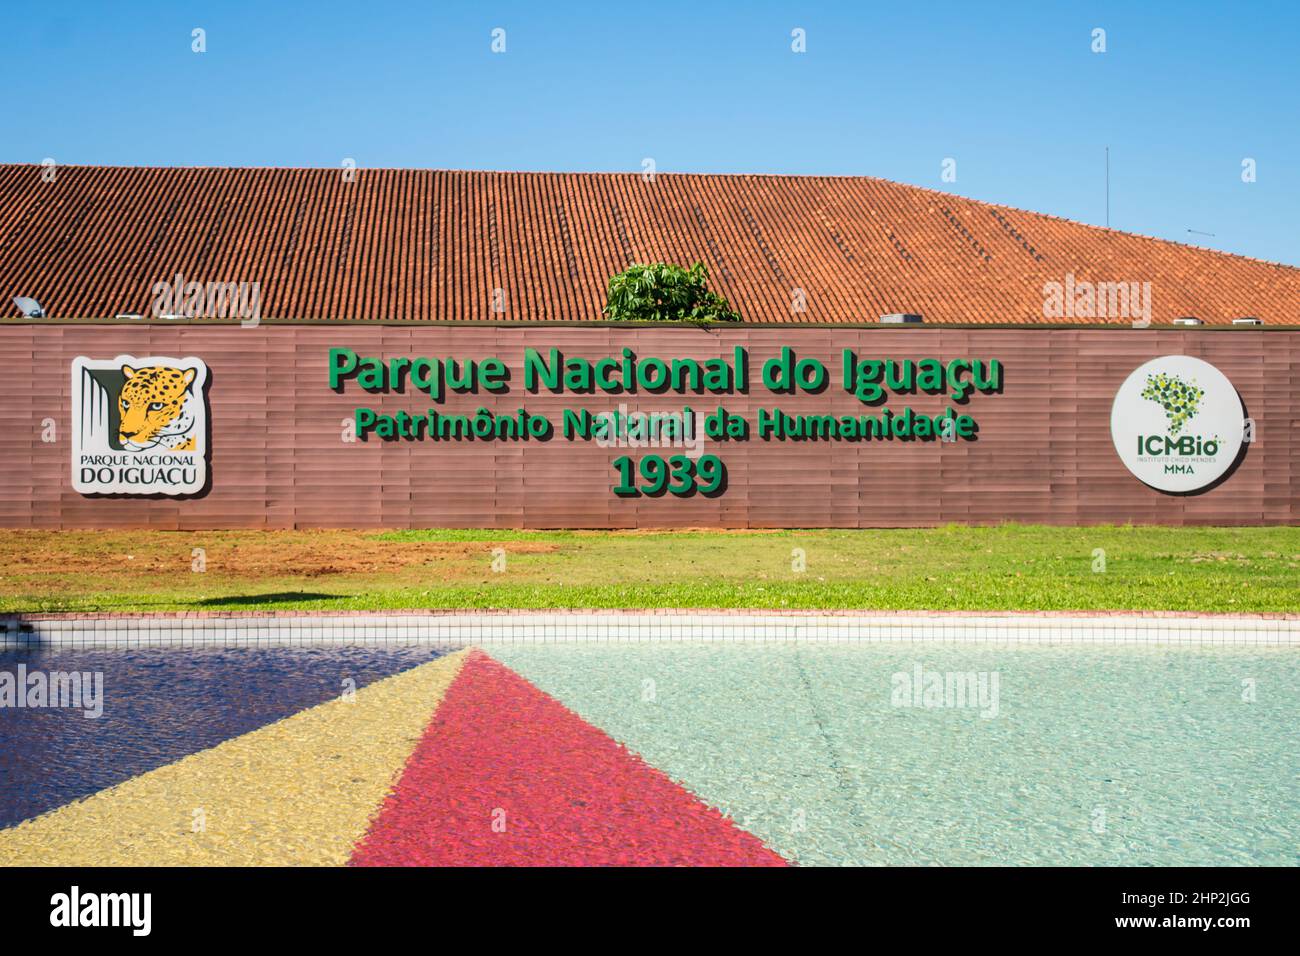 Foz do Iguaçu, Brésil - Circa juin 2020 : vue sur l'entrée du parc national d'Iguaçu, indiquant son statut de patrimoine mondial Banque D'Images